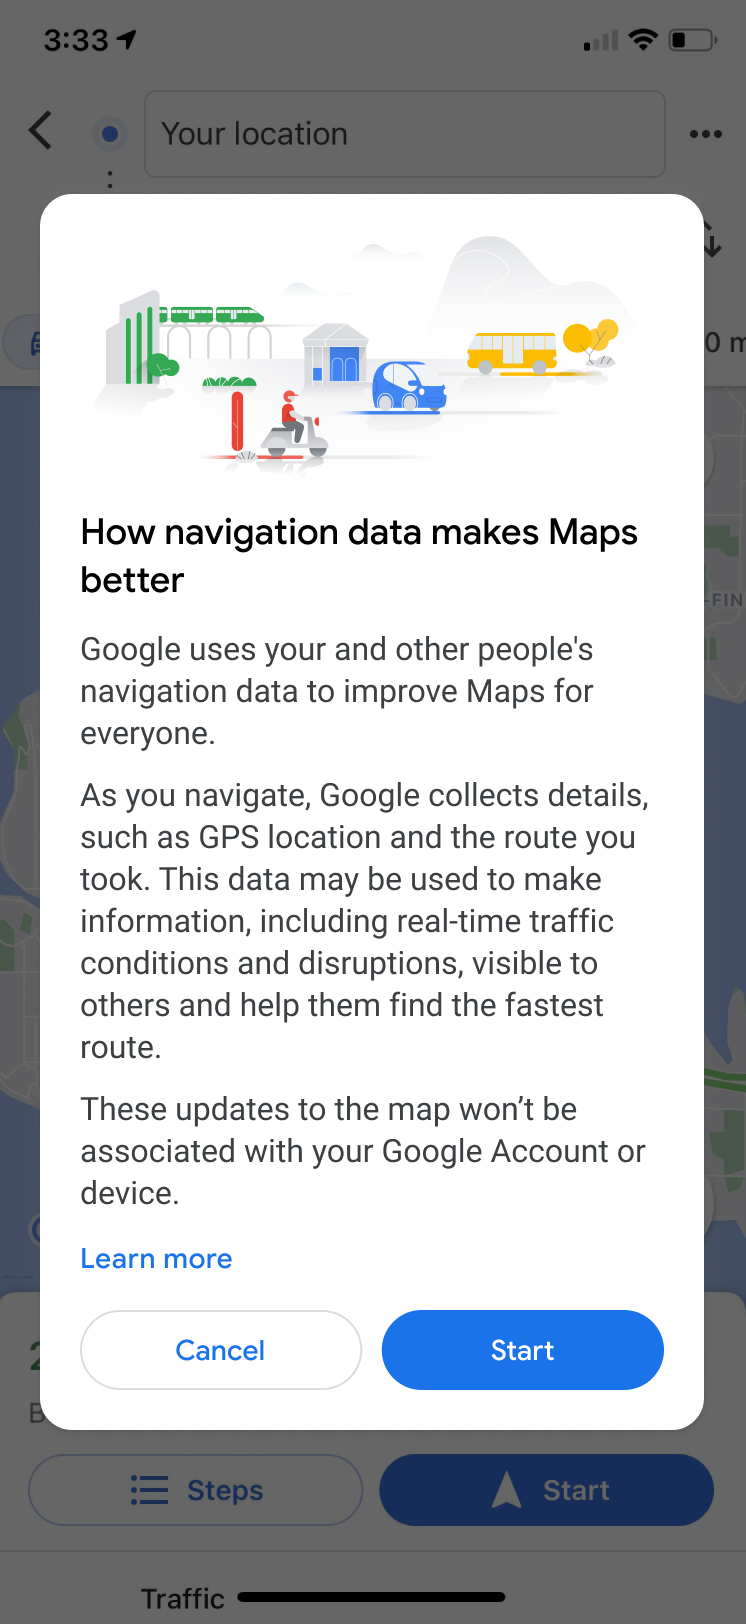 Komunikat o konieczności udostępnienia danych w Mapach Google